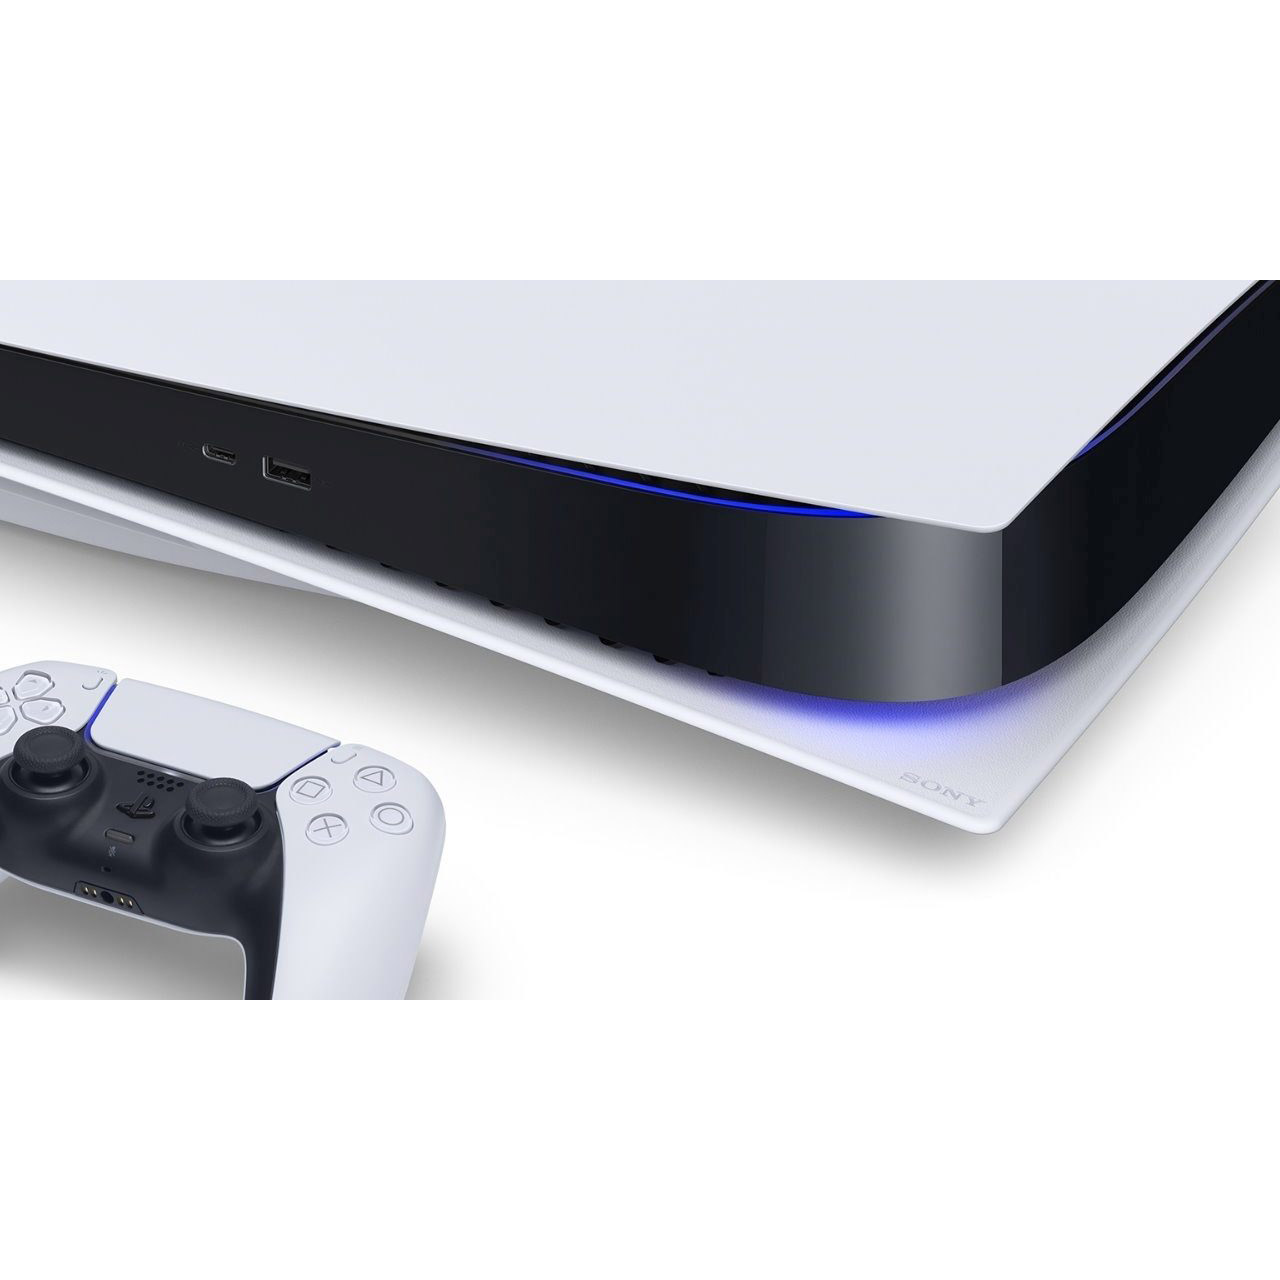 کنسول بازی سونی مدل PlayStation 5 ظرفیت 825 گیگابایت ریجن 1200 آسیا به همراه دسته اضافی و هدست